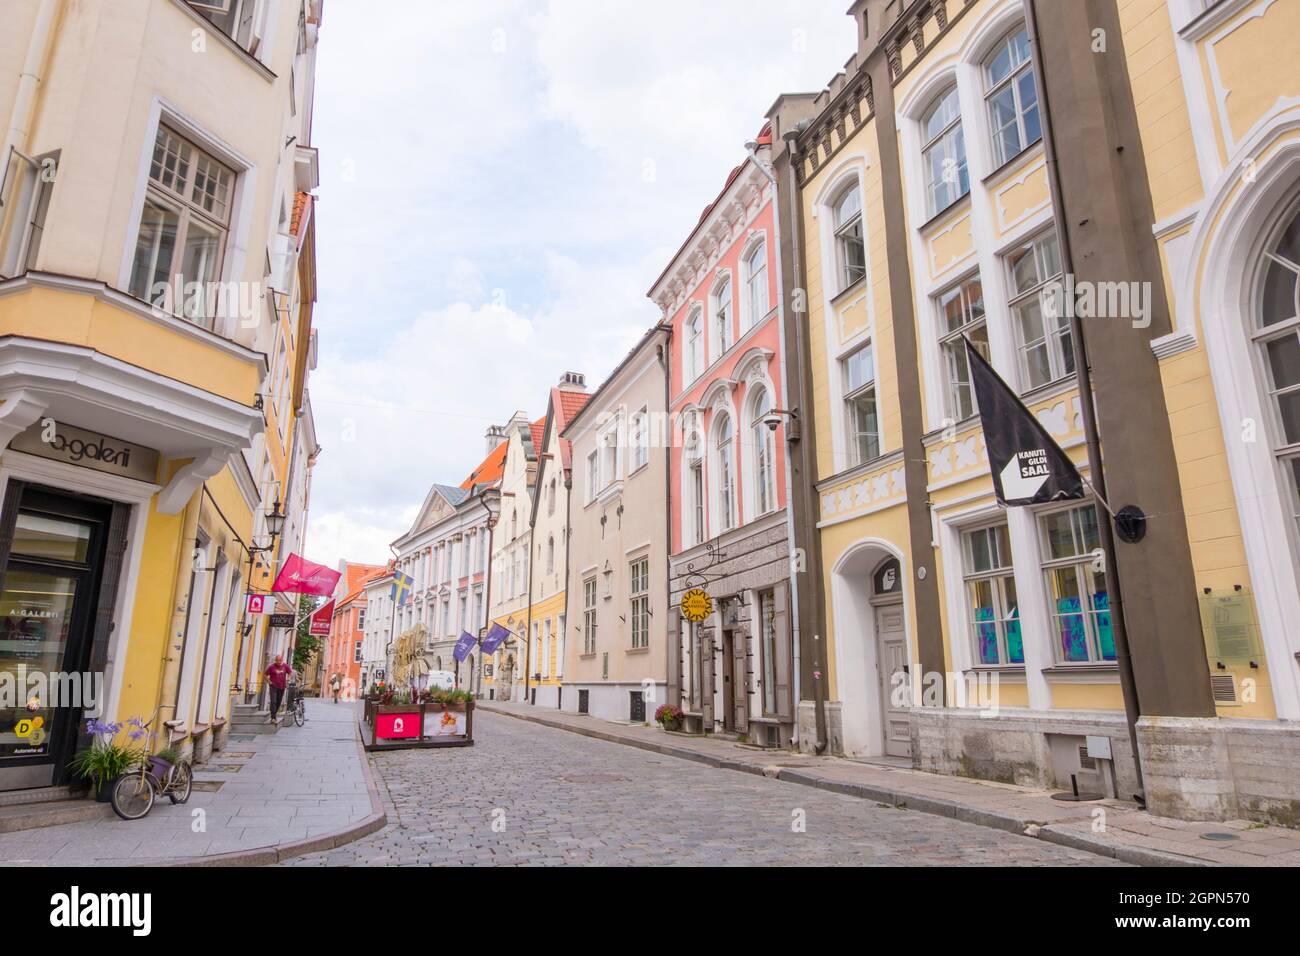 Pikk tänav, Long street, old town, Tallinn, Estonia Stock Photo